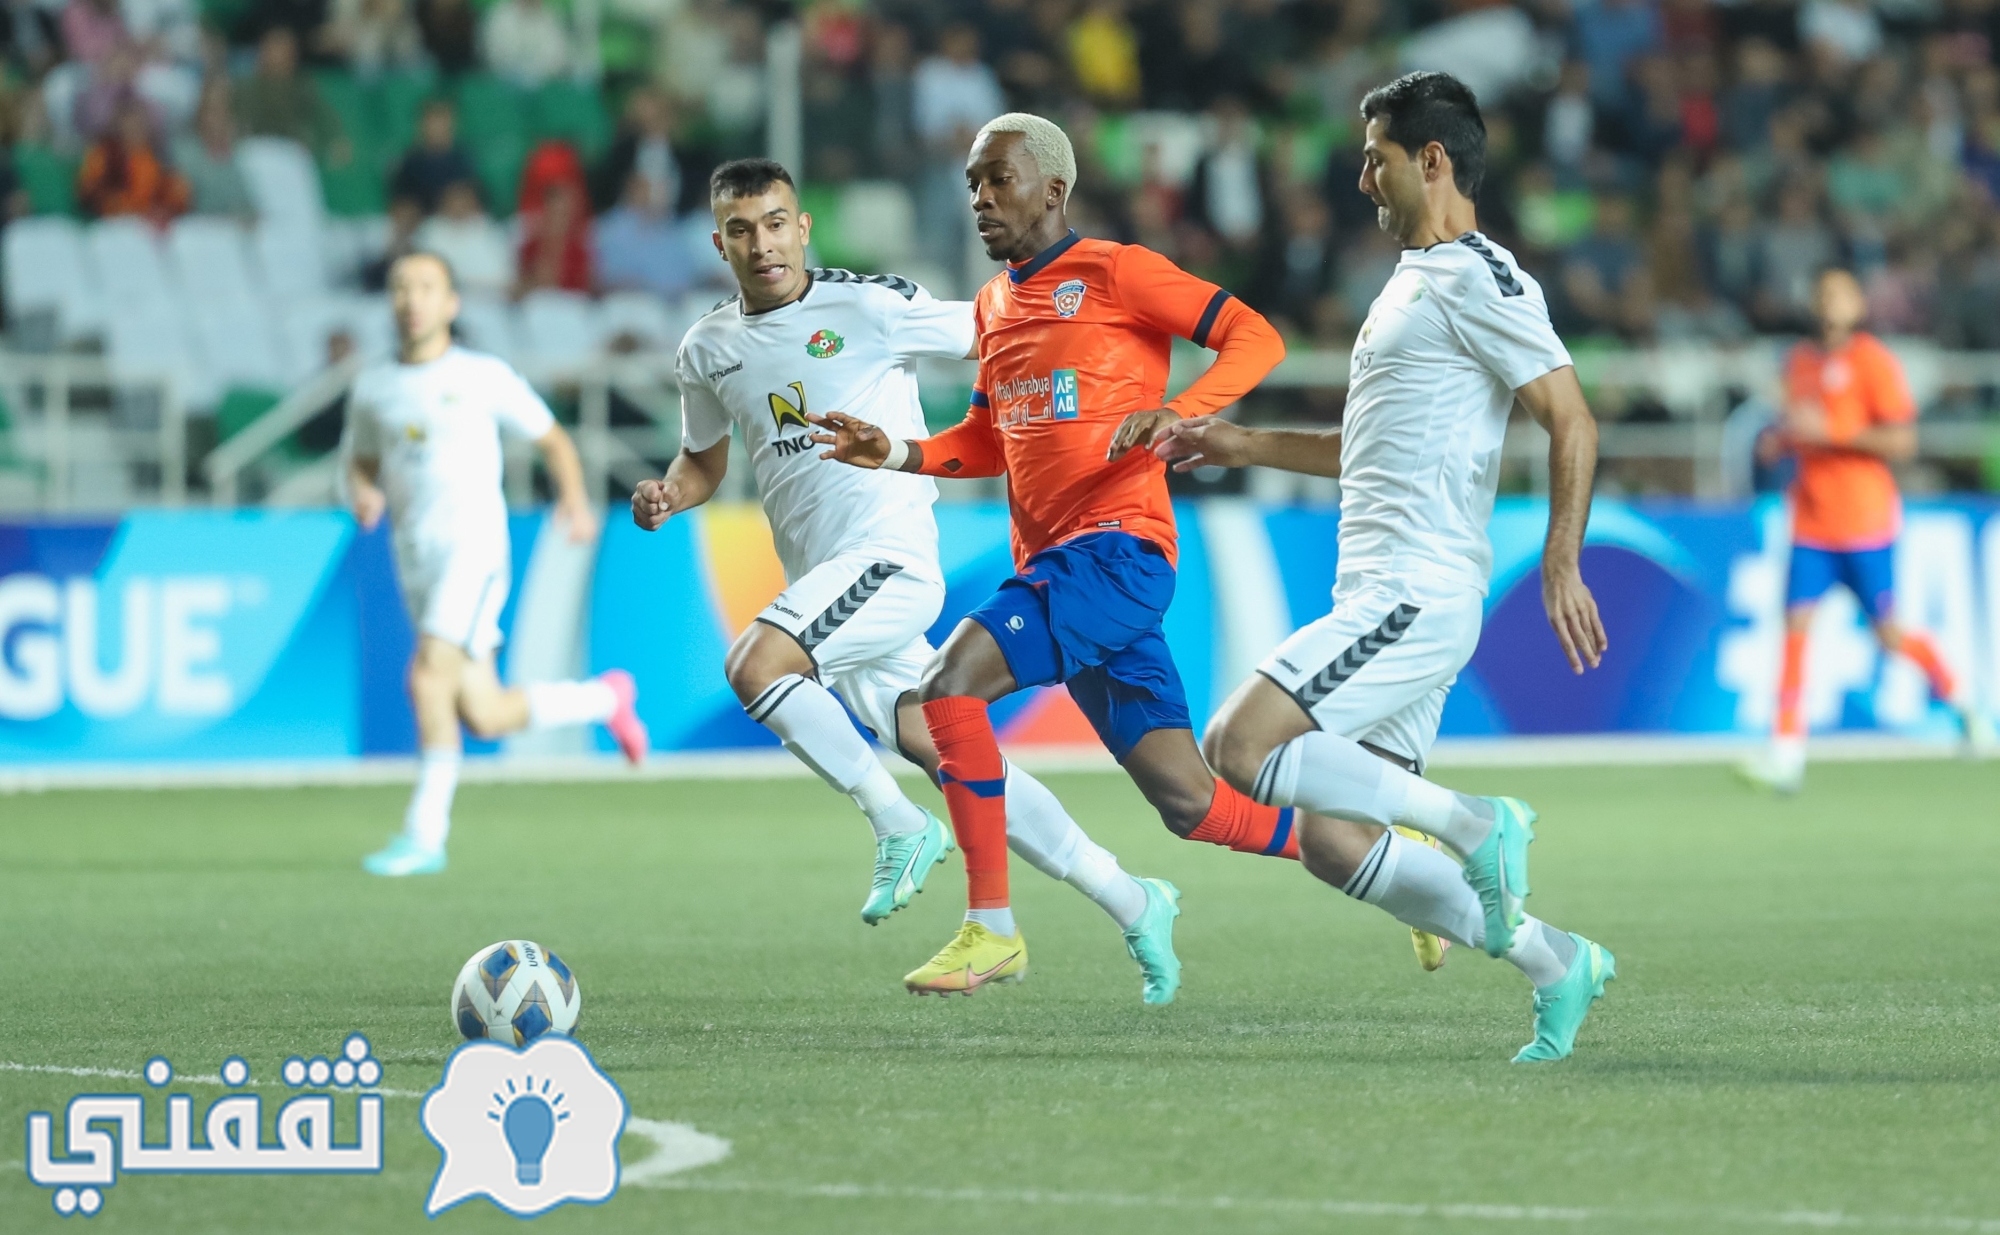 مباراة العين الإماراتي ضد أهال التركماني في البطولة الآسيوية للأندية الأبطال